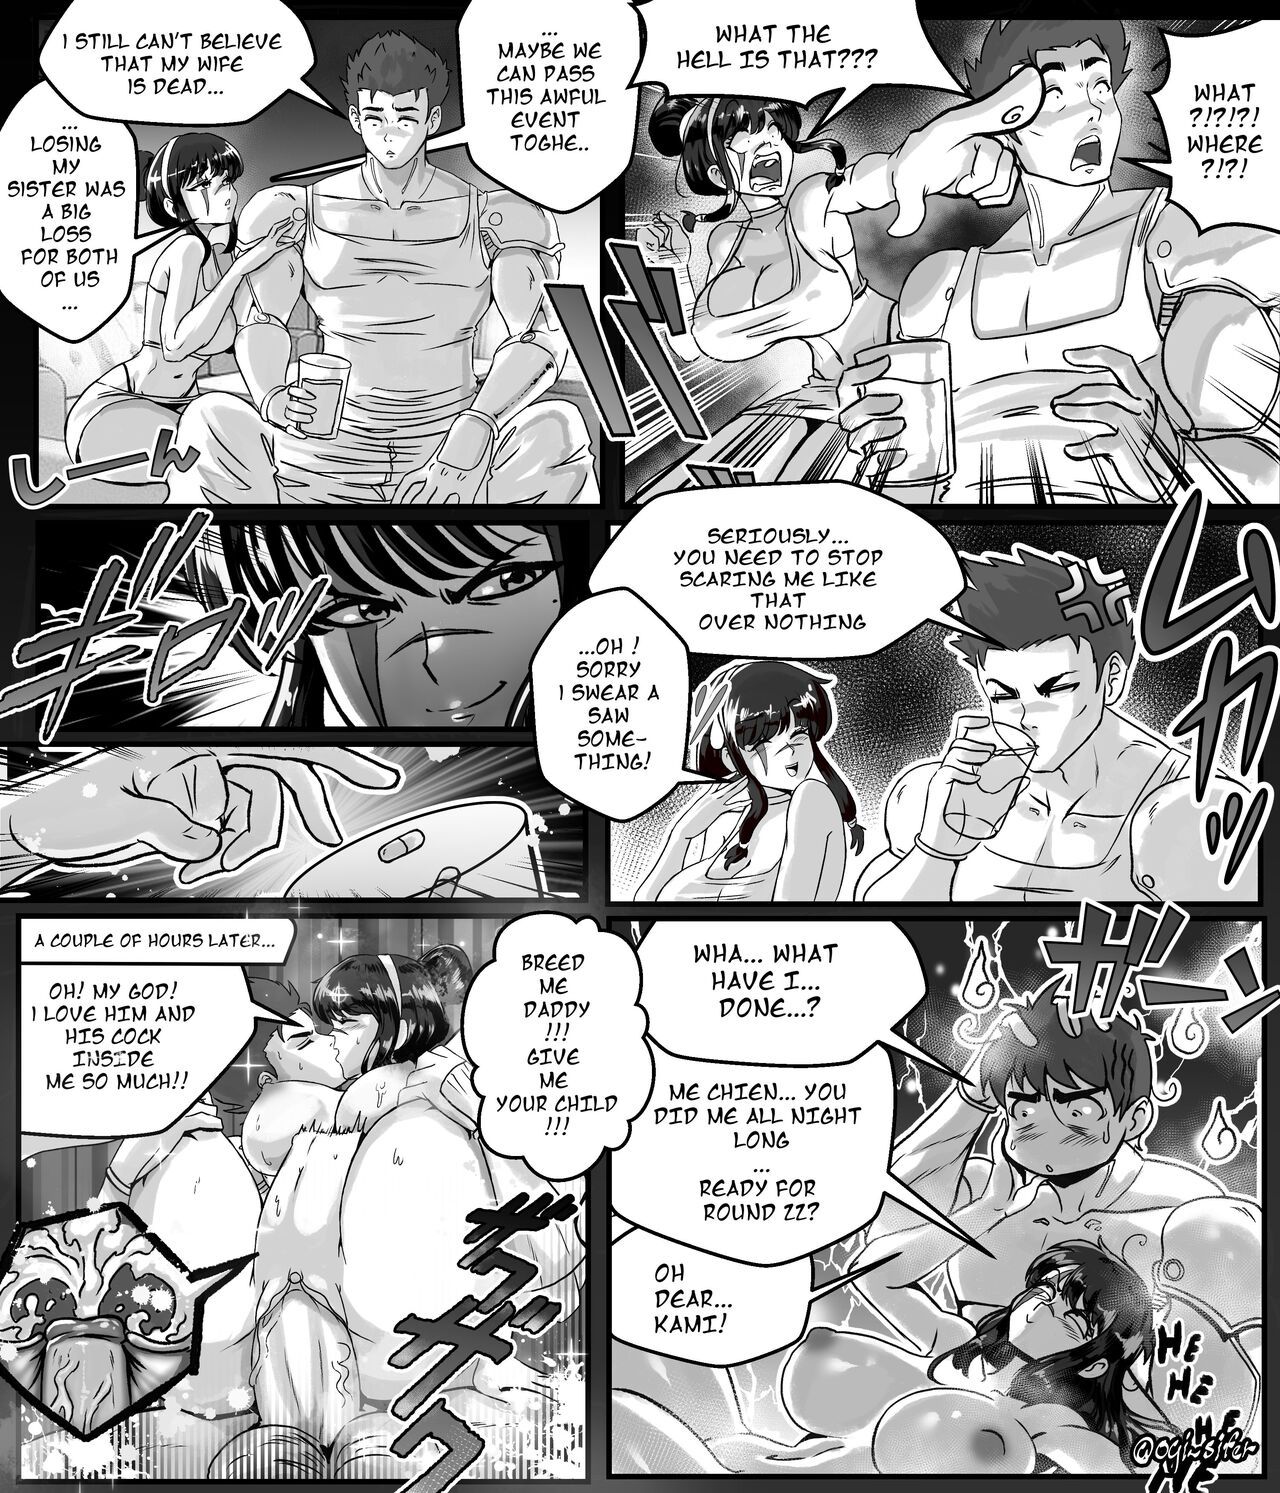 Anime Comics English - Ogi manga comics collection Porn Comic english 01 - Porn Comic